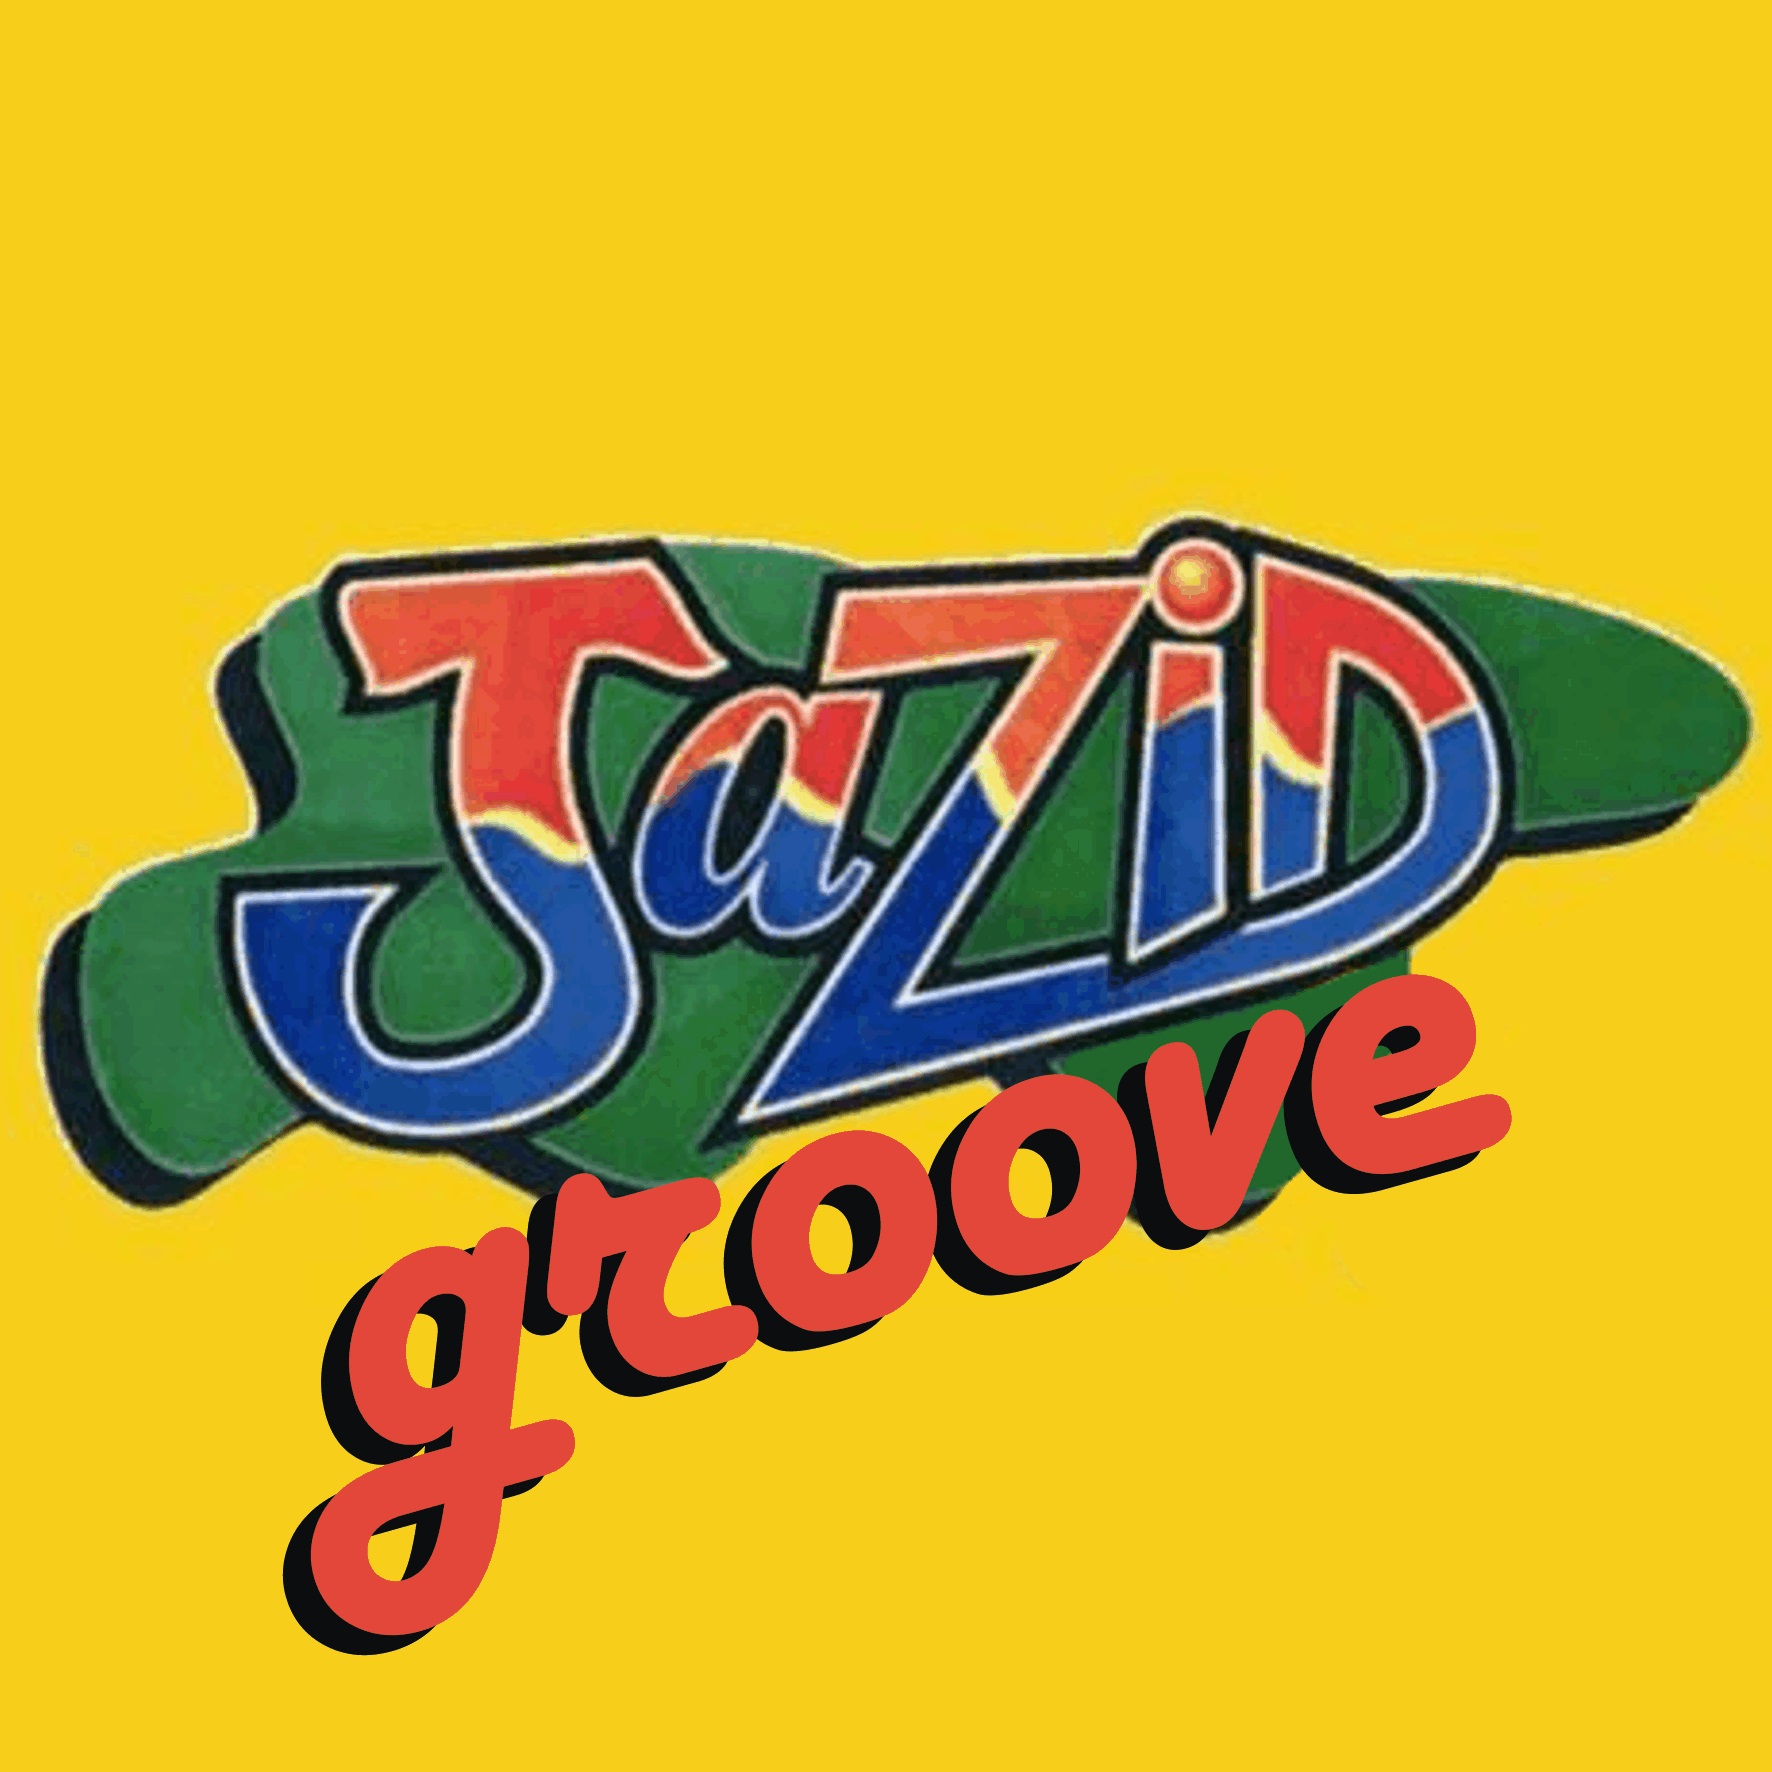 Jazid Groove 37